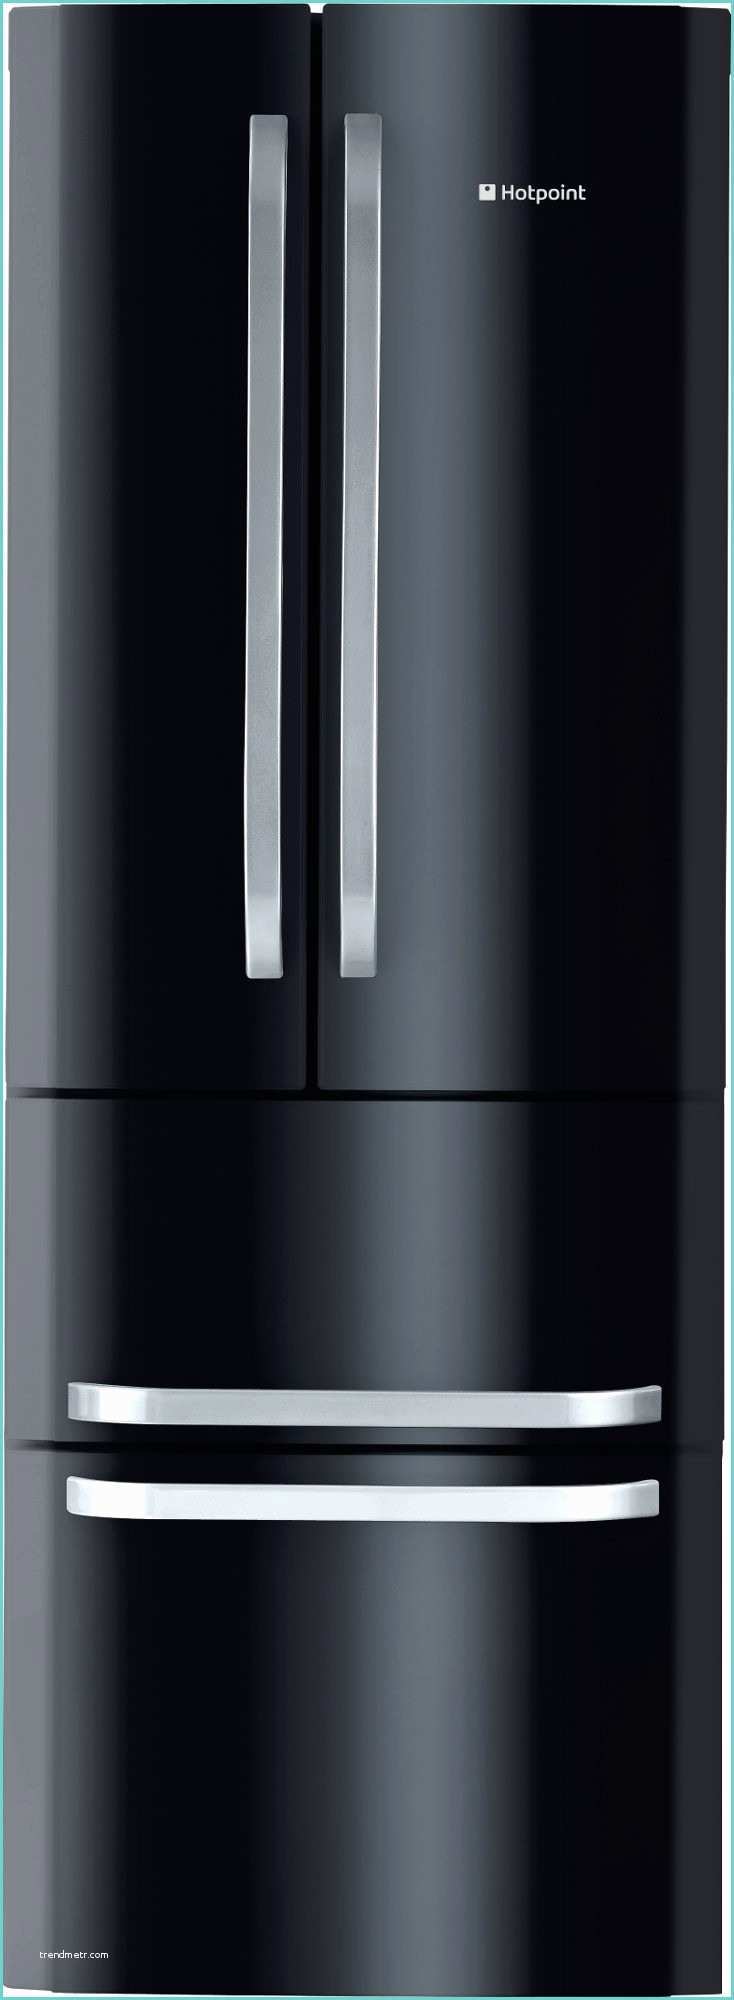 Rfrigrateur Largeur 80 Cm Refrigerateur 80 Cm De Ur